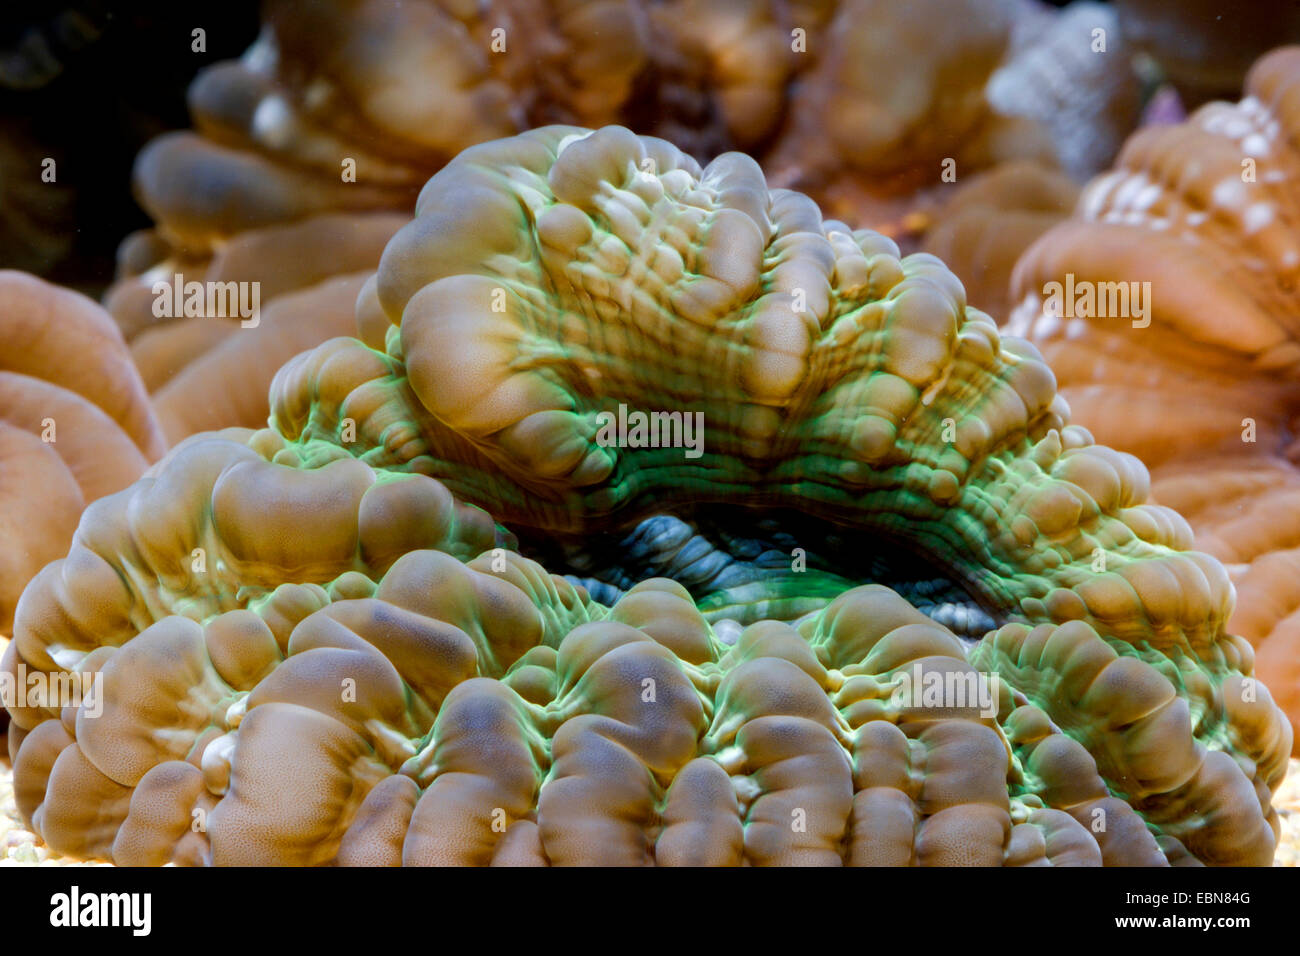 Green occhi di gatto Coral (Cynarina lacrymalis), macro shot Foto Stock